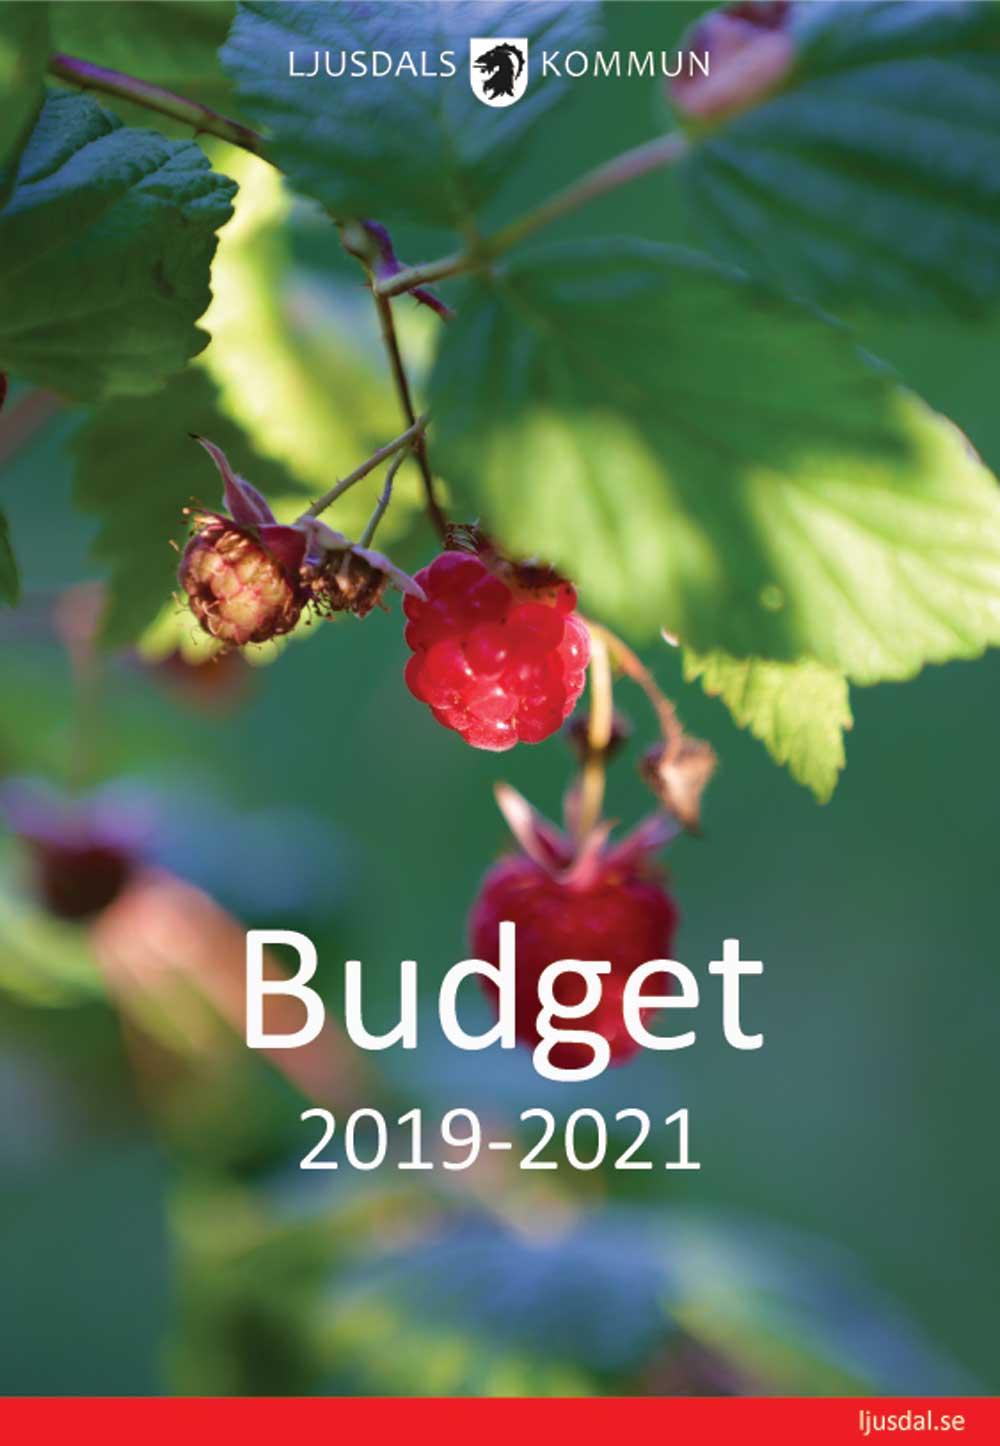 Framsidan på budgetdokumentet 2019-2021